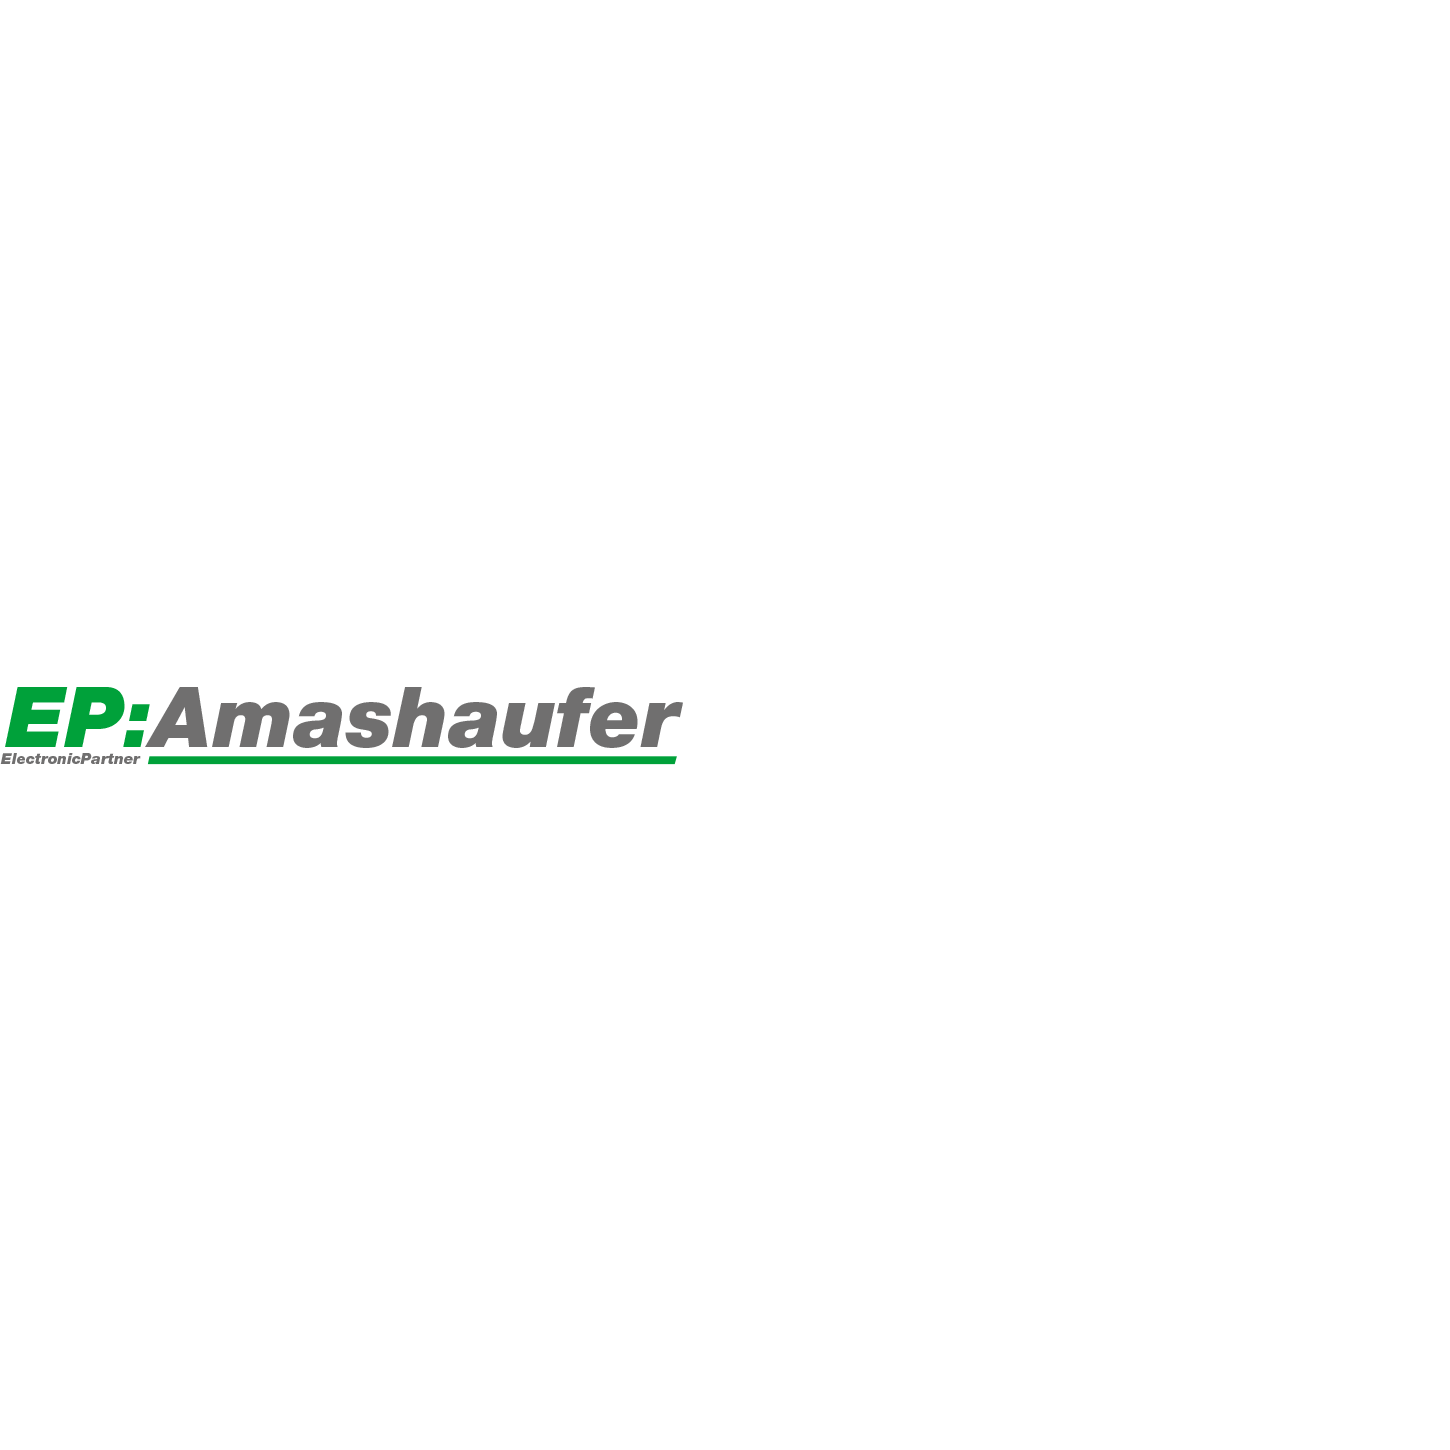 EP:Amashaufer Logo